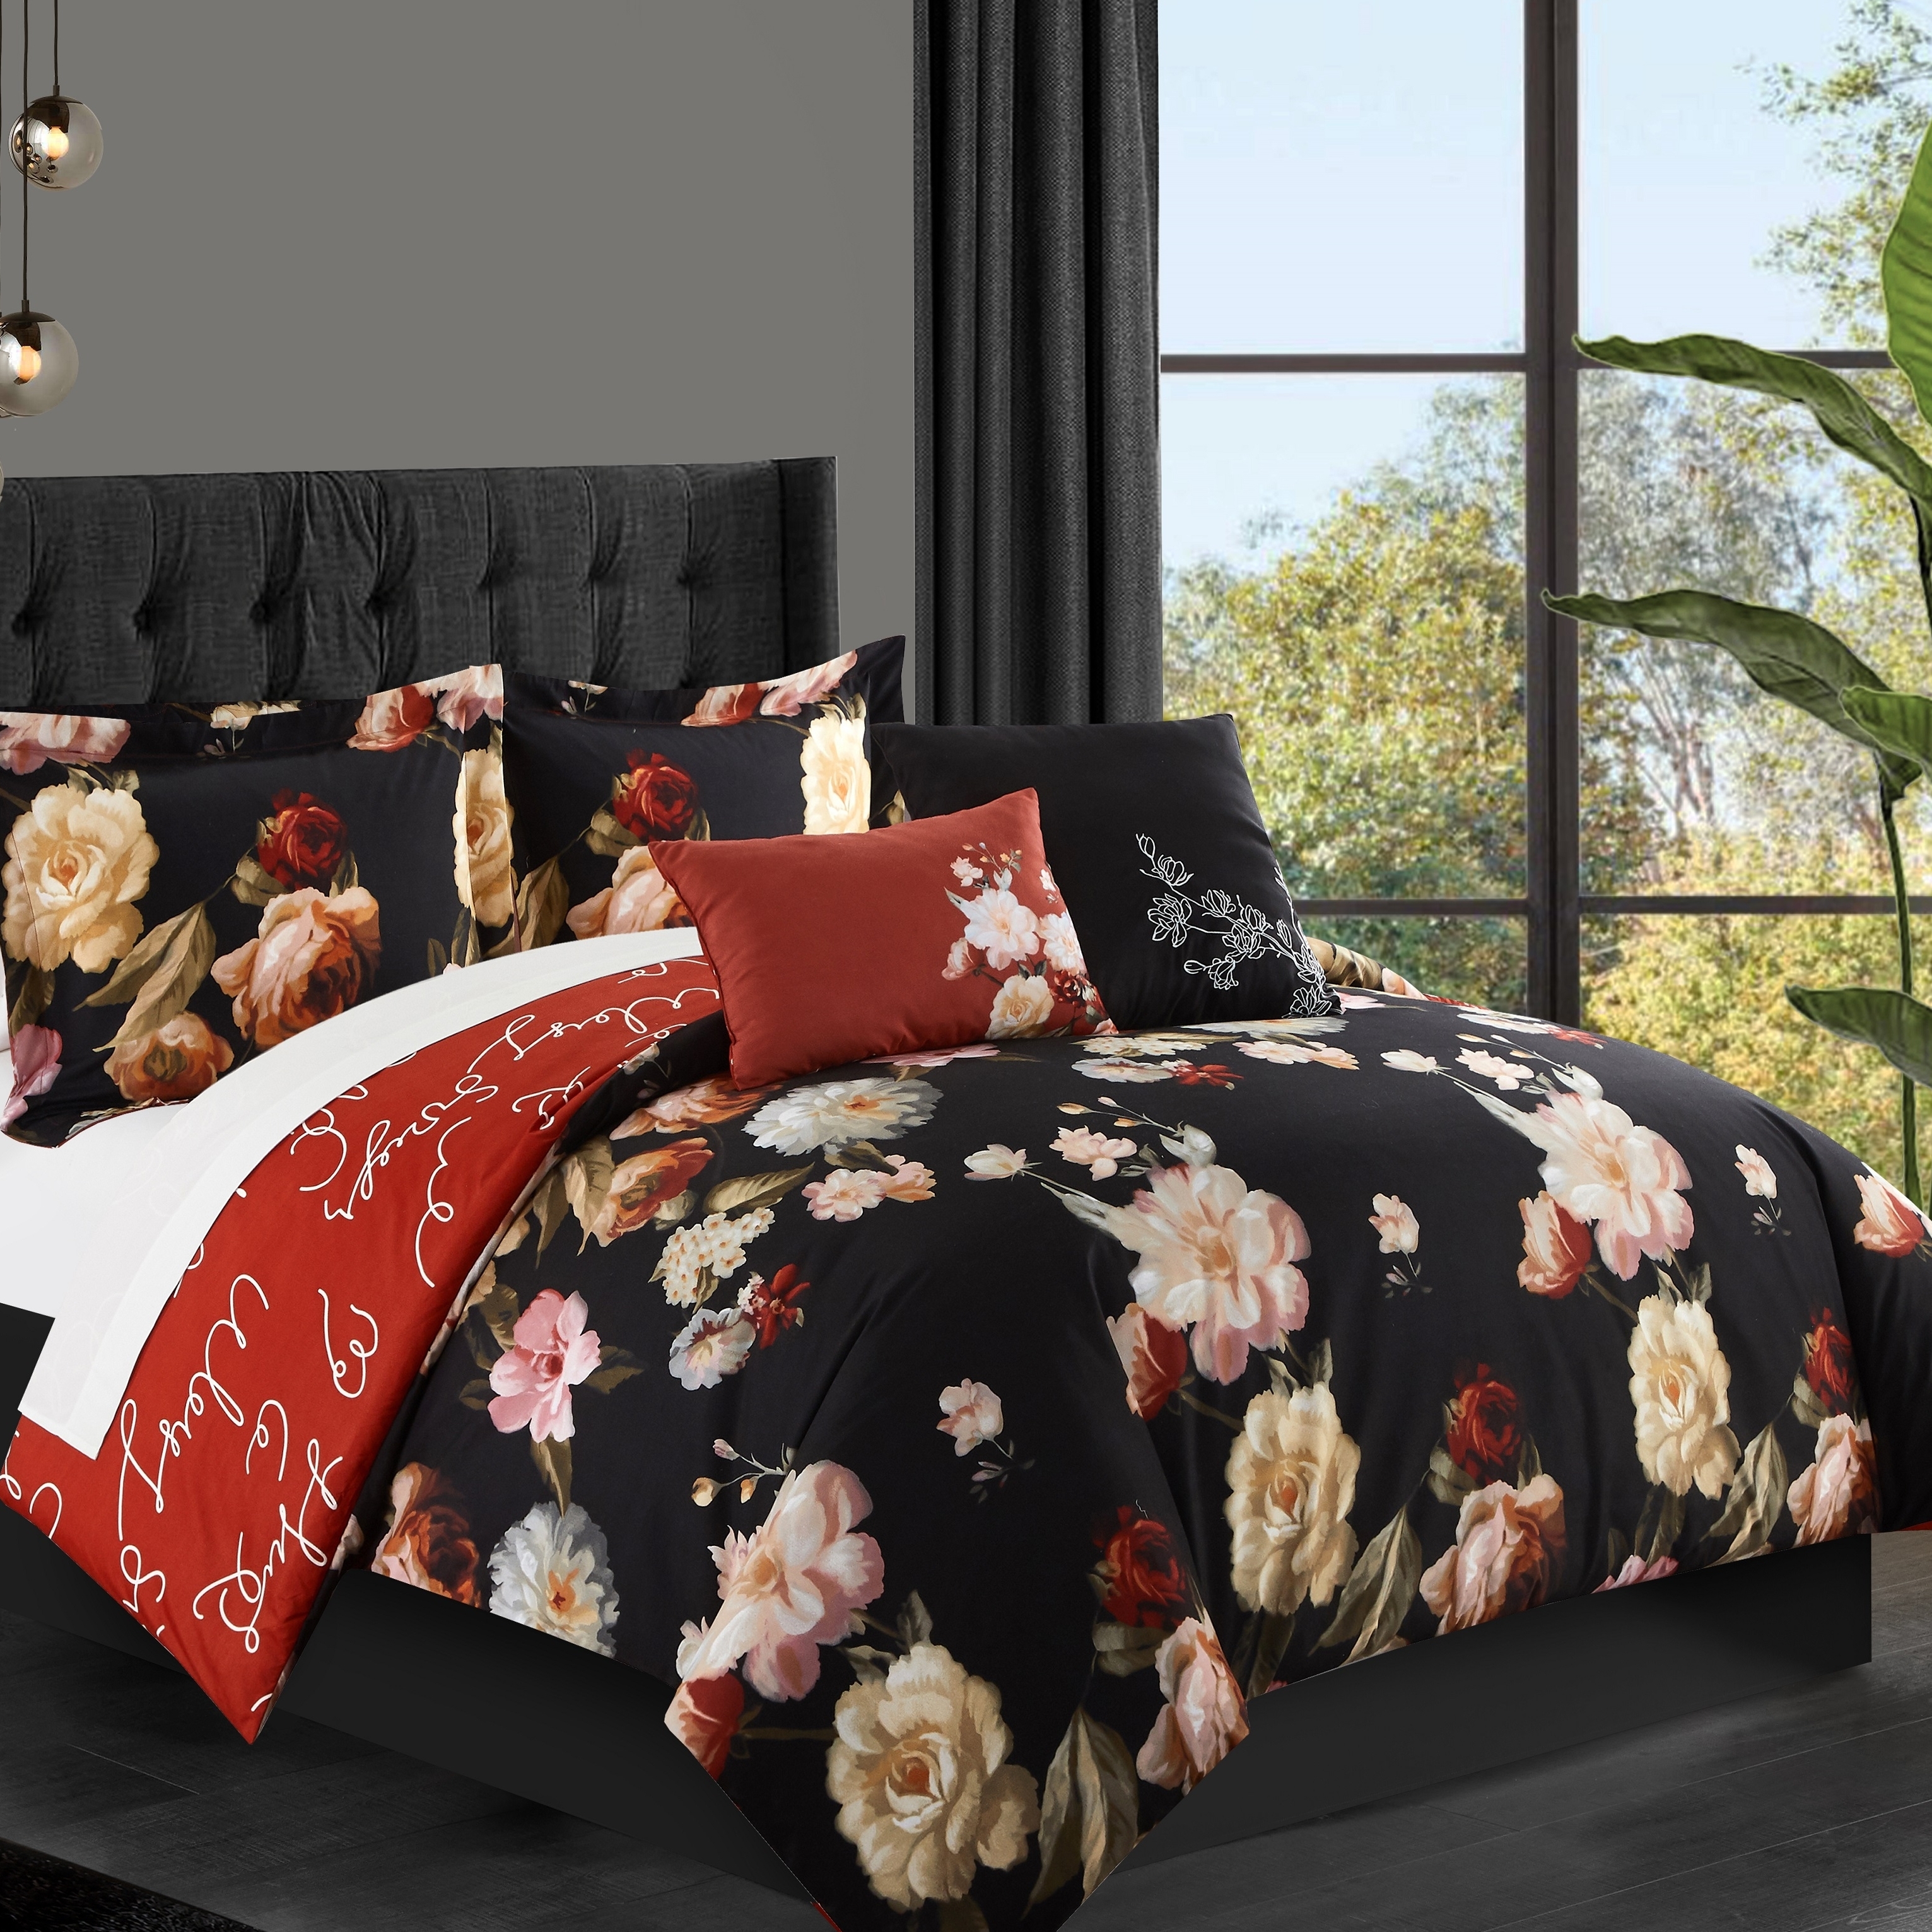 Emeraude 3 Piece Reversible Quilt Set Floral Print Cursive Script Design Bedding - Black, Twin